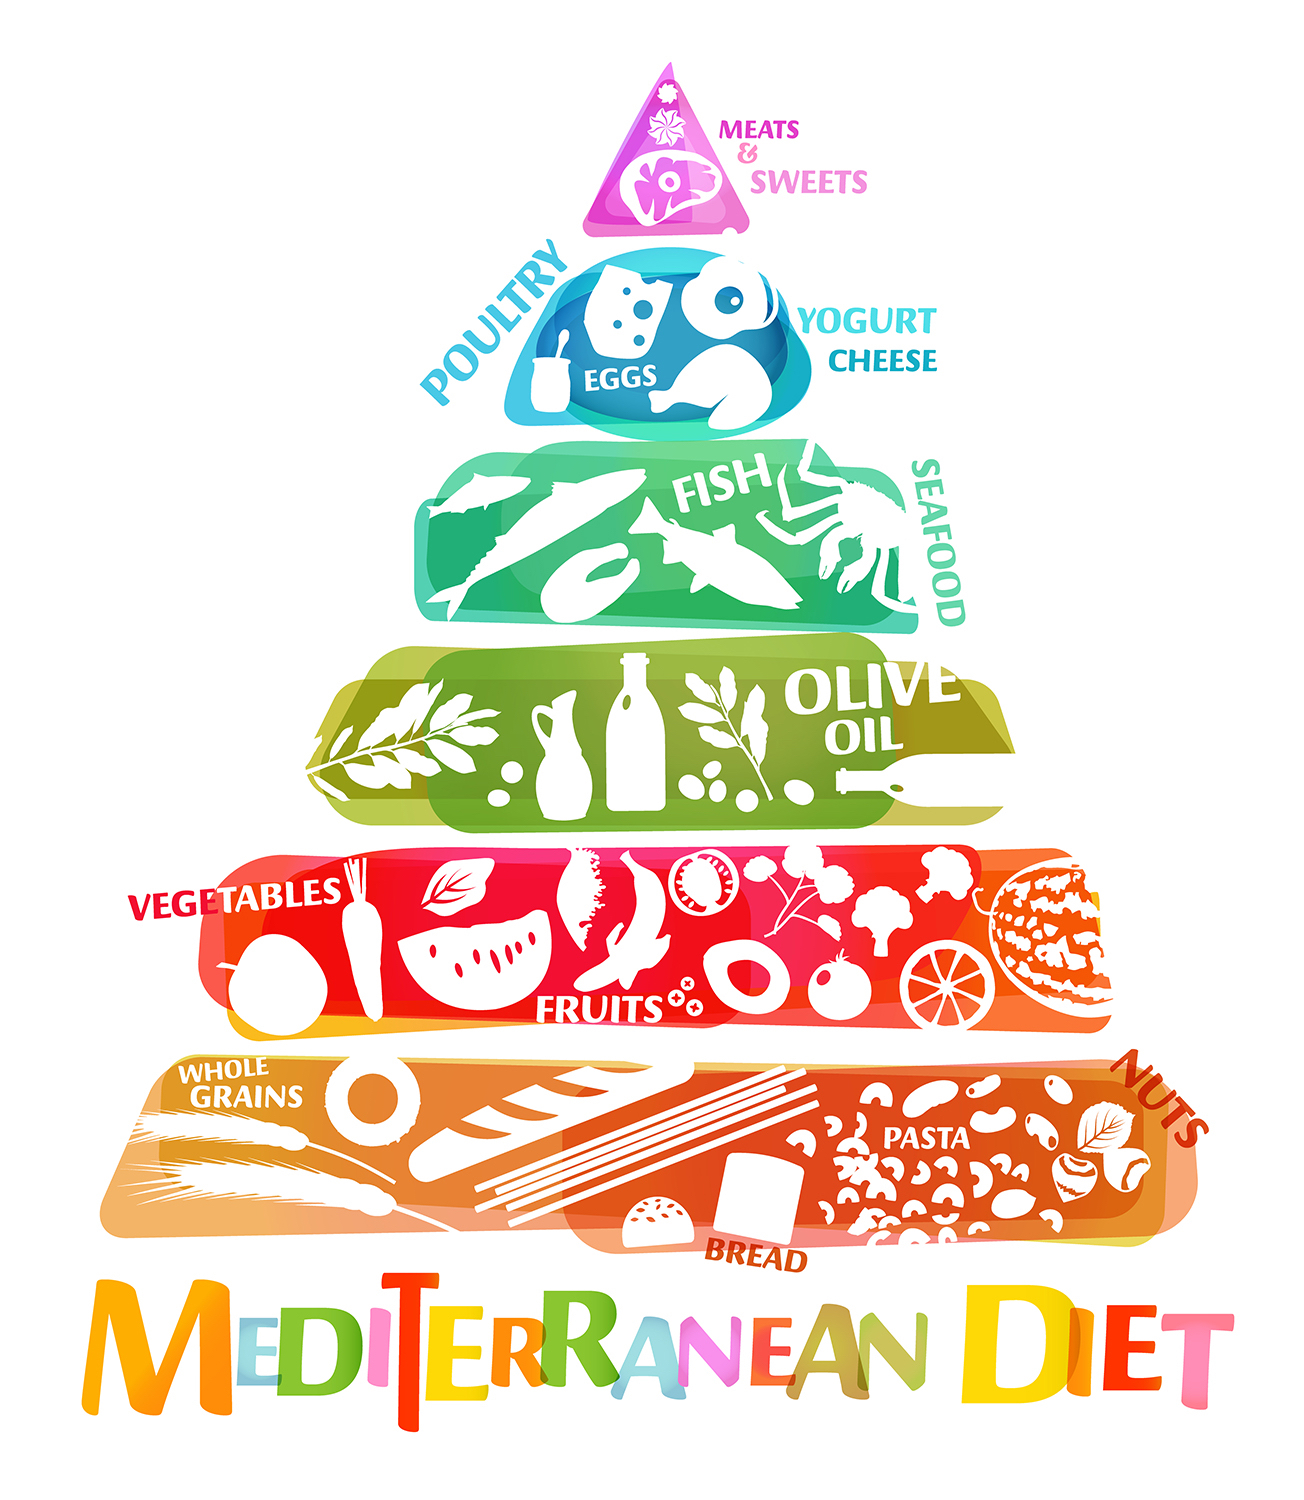 Так выглядит пищевая пирамида, отражающая общее соотношение продуктов, рекомендованных для средиземноморской диеты